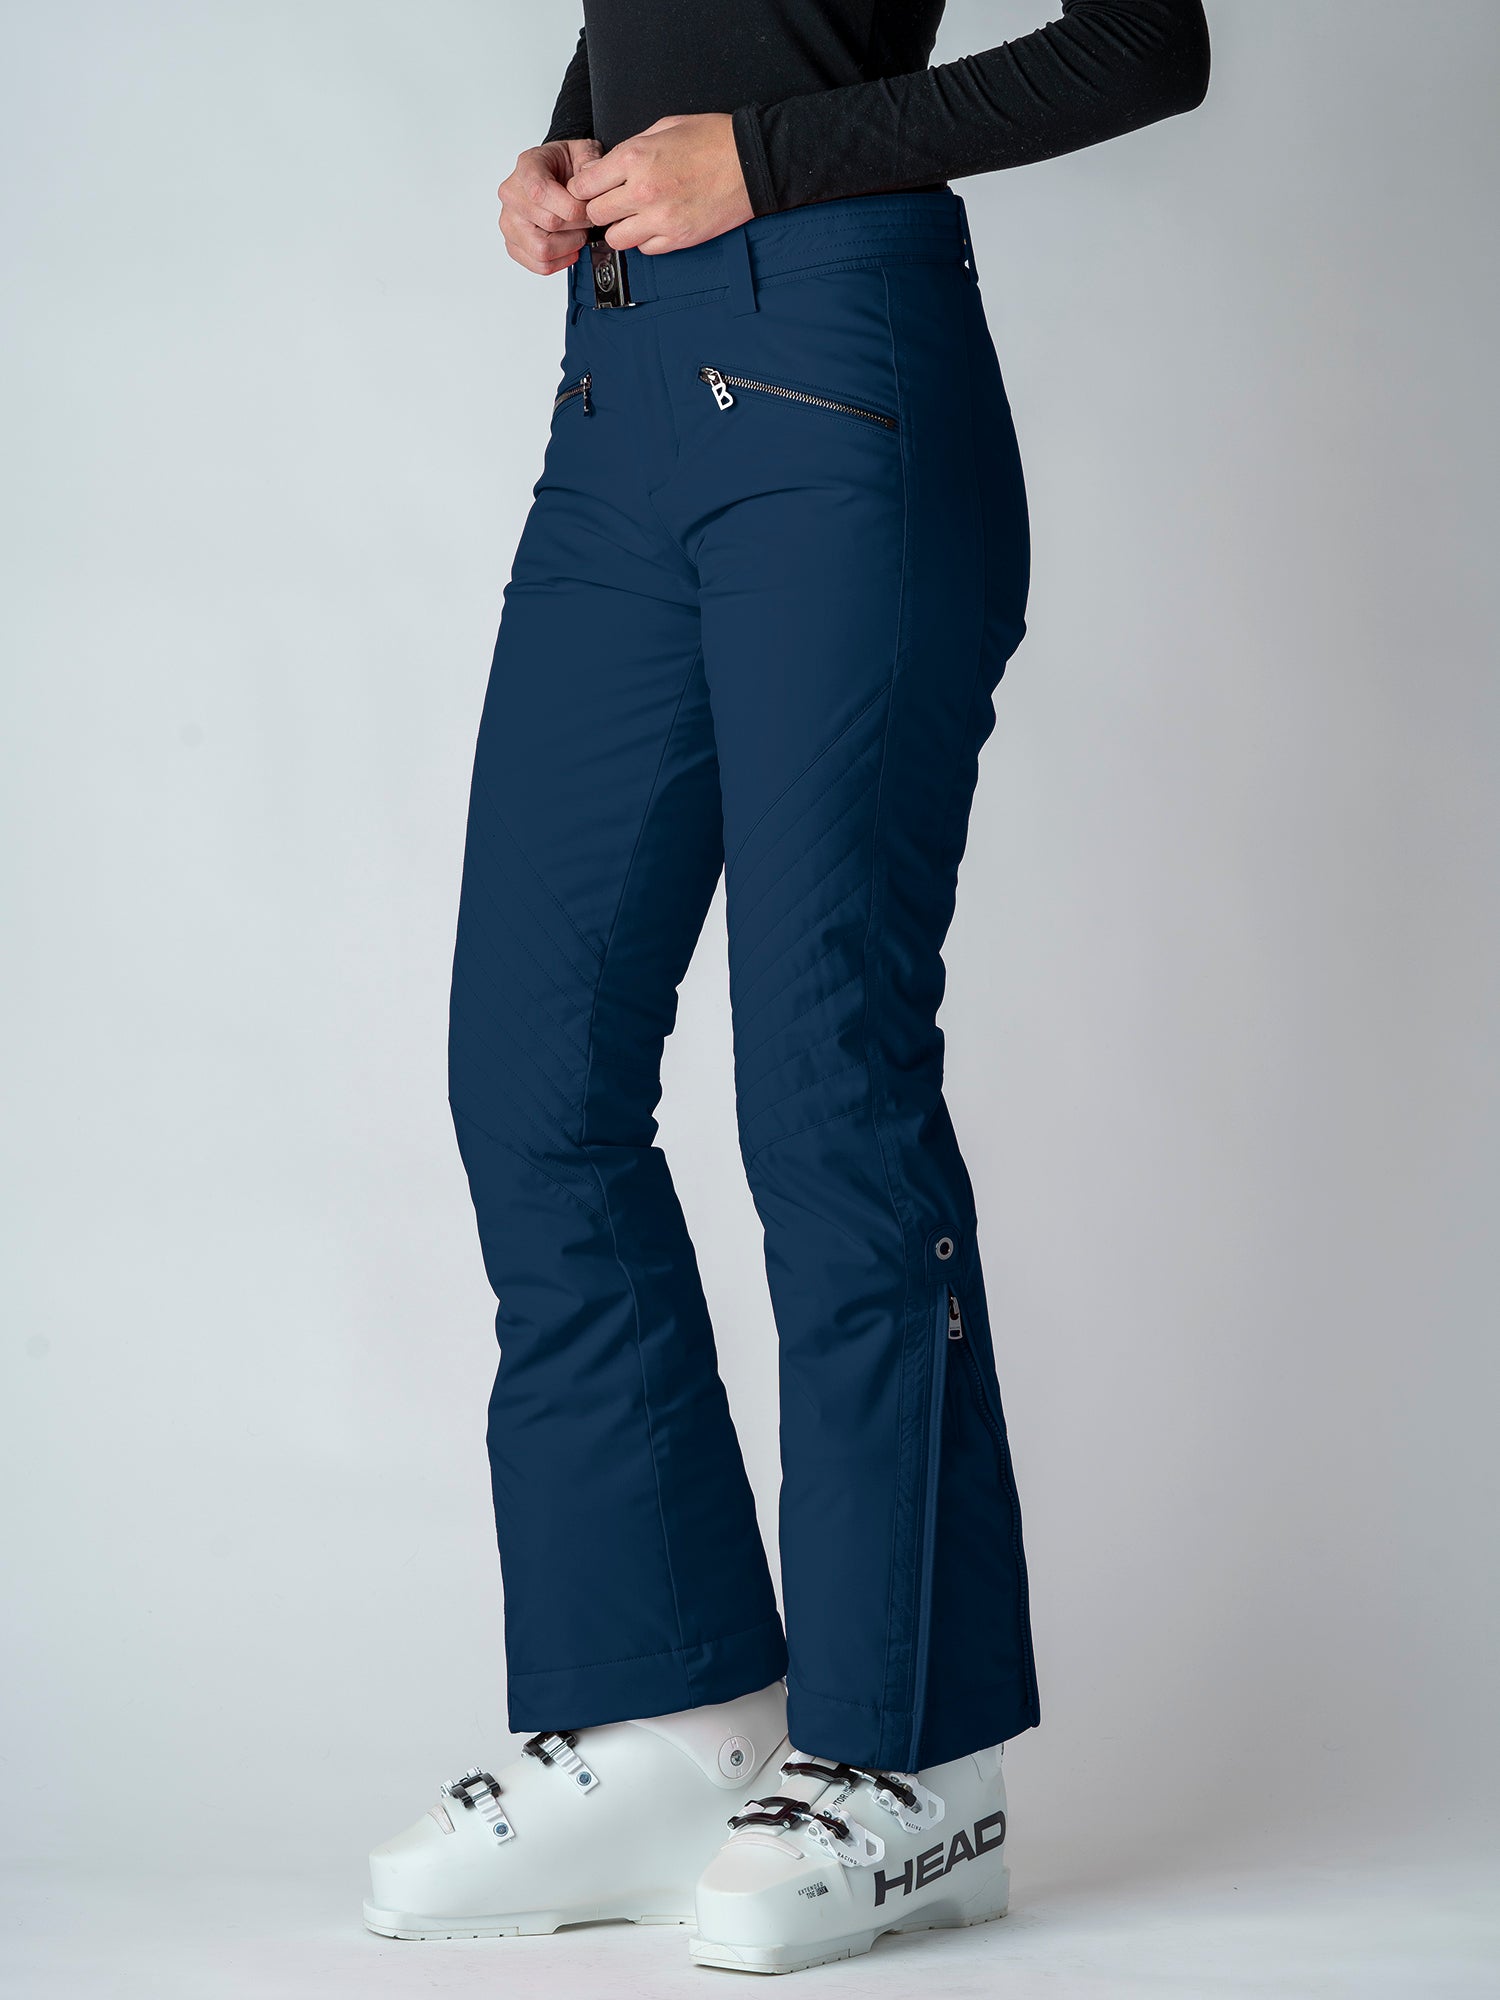 Bogner Franzi Ski Pants Women's - Size 34 US 4 XS - Off-White Black Print -  NEW